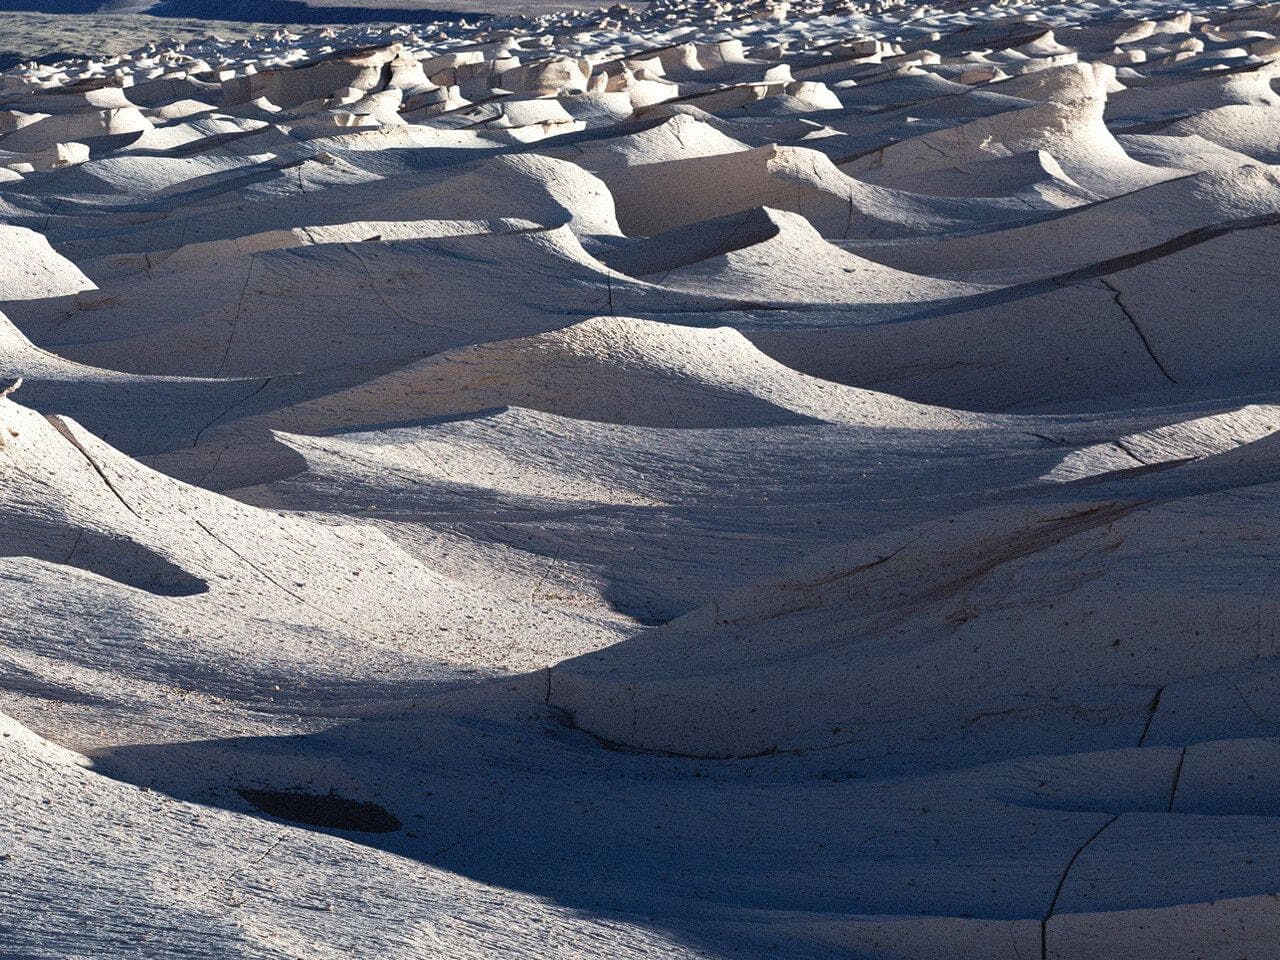 Sand dunes, Argentina